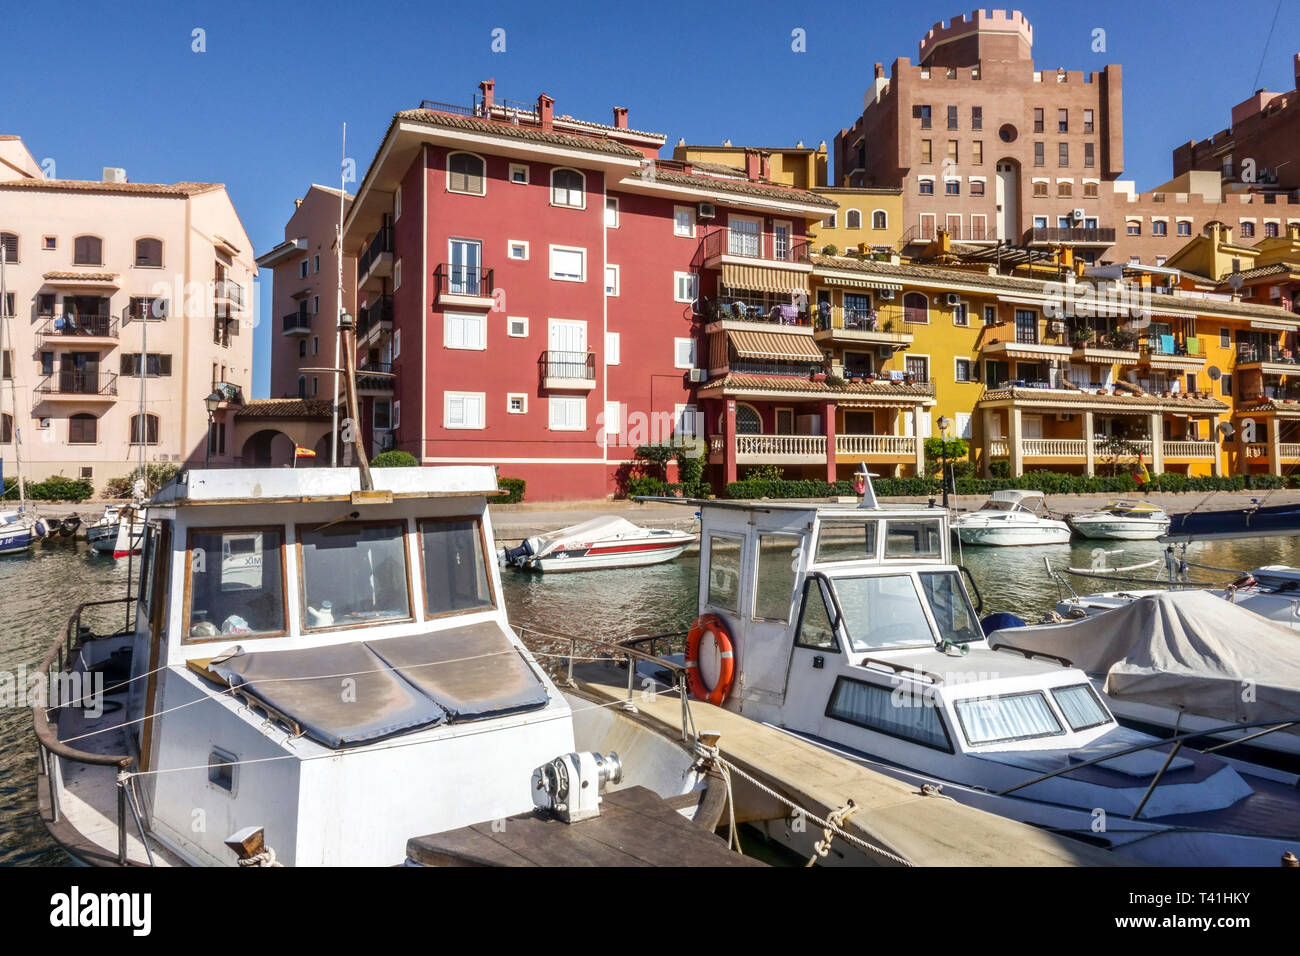 Valencia Hafen Saplaya Spanien Boote im Yachthafen Valencia Spanien Hafen Europa Stockfoto